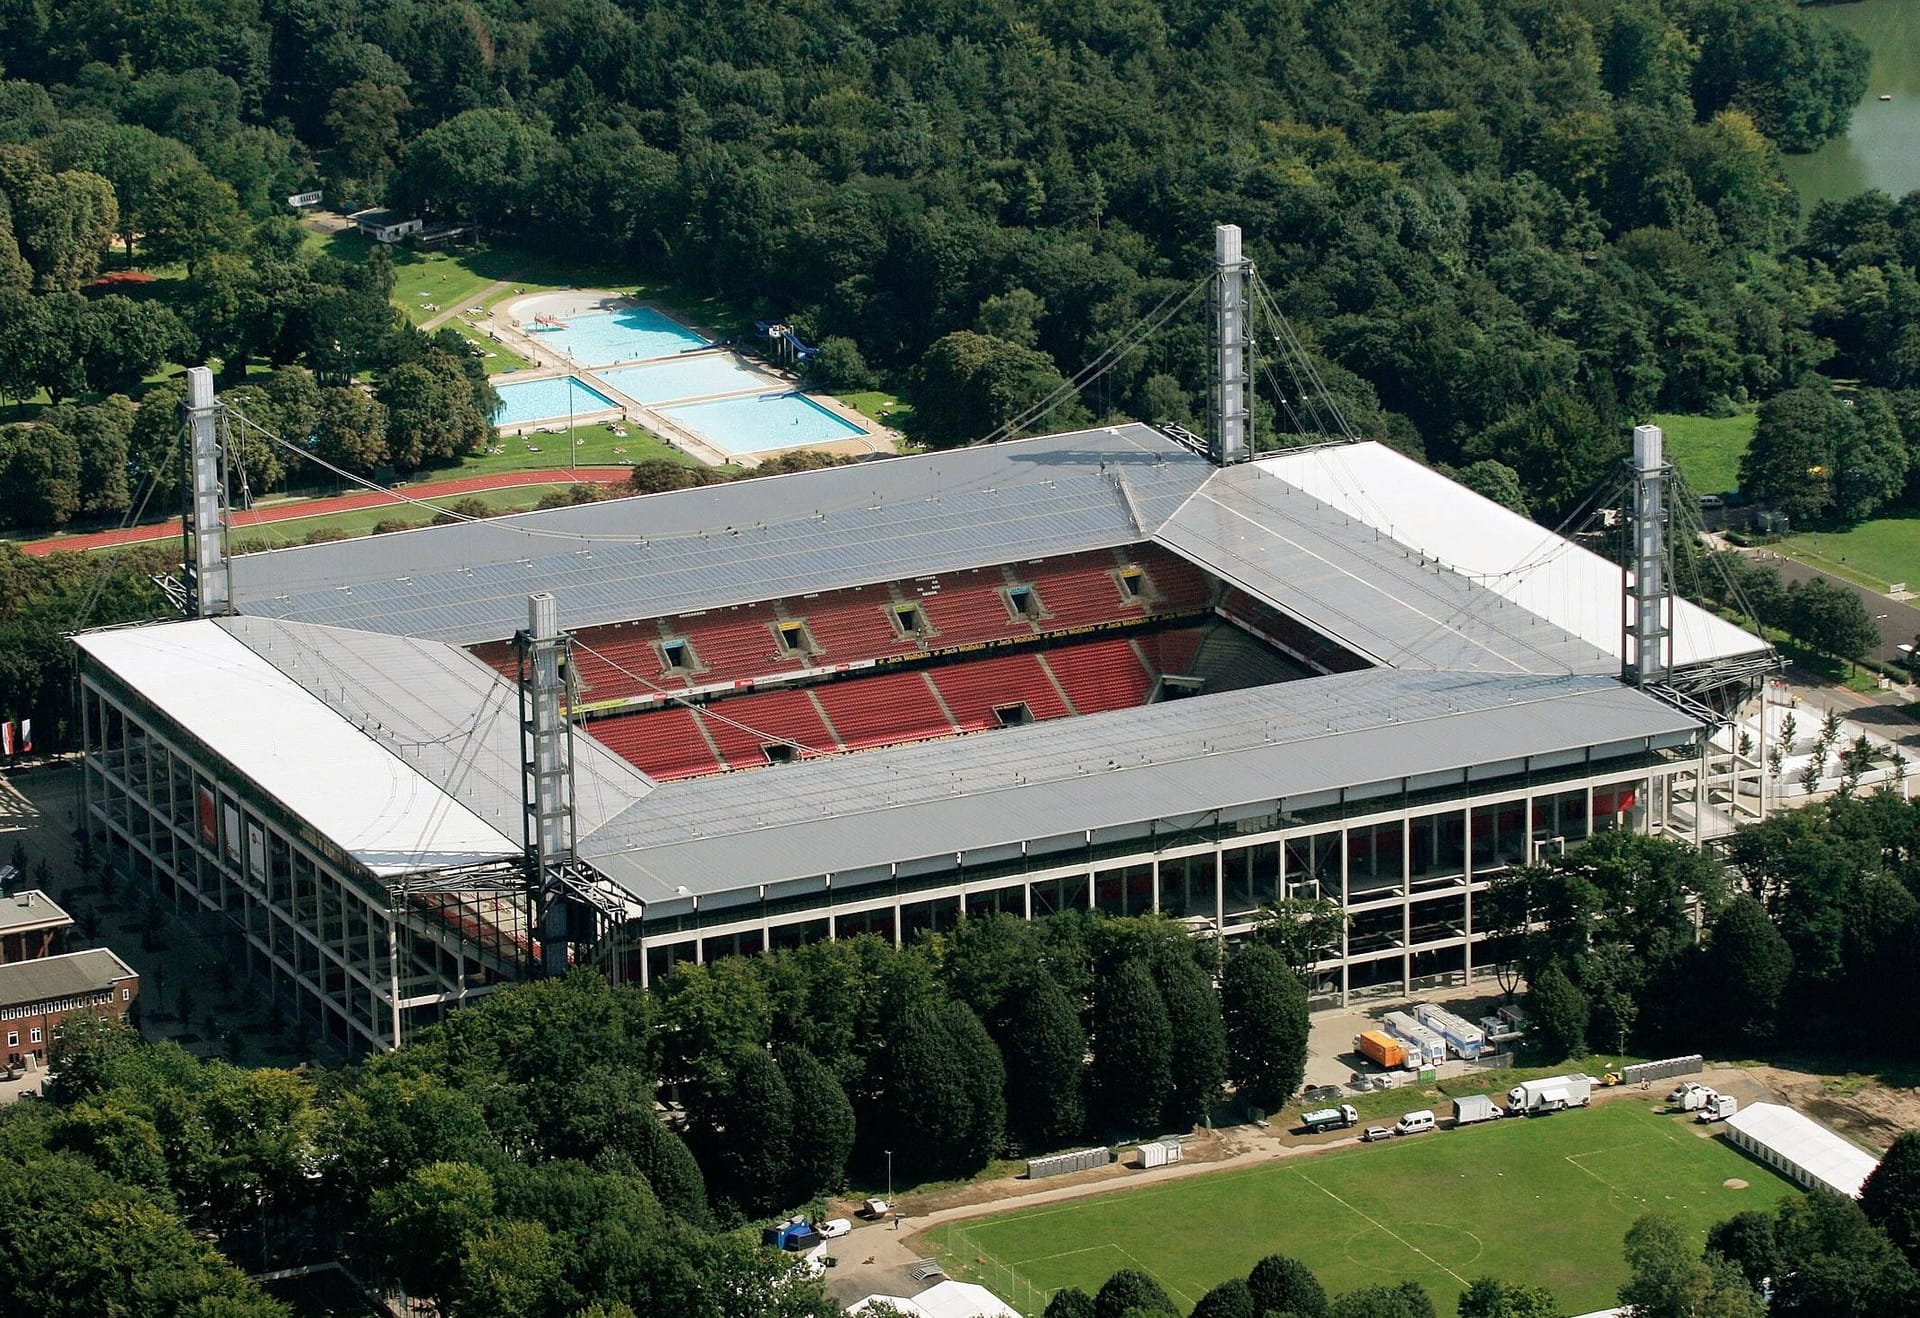 Rhein-Energie-Stadion in Köln: Auch die viertgrößte Stadt Deutschlands wird bei der EM vertreten sein. Dabei soll sich die Stimmung bei den Heimspielen des 1. FC Köln im Idealfall auch auf das Turnier übertragen. 43.000 Zuschauer finden während der EM in dem Stadion Platz. Verfolgen dürfen sie vier Gruppenspiele und ein Achtelfinale.